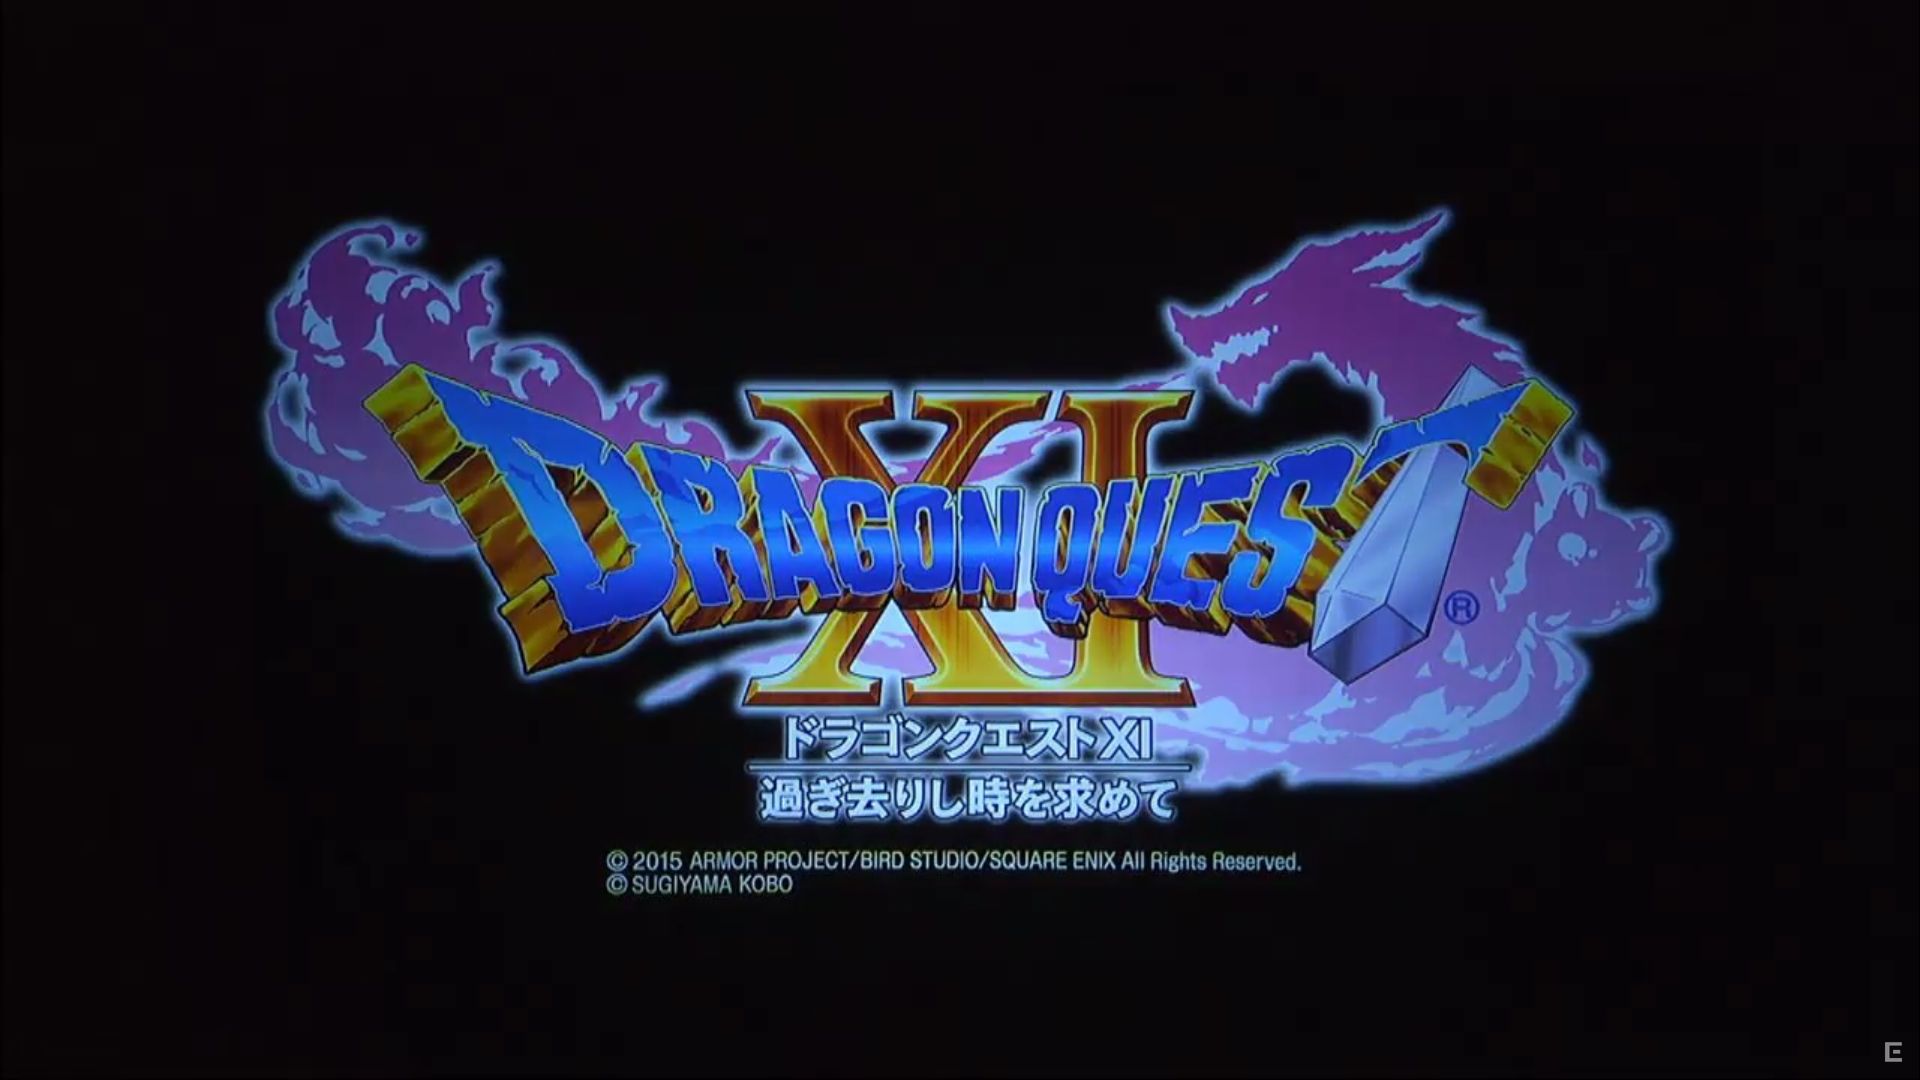 دو عنوان Dragon Quest XI و X برای Nintendo NX نیز تایید شدند + تریلر نسخه XI - گیمفا